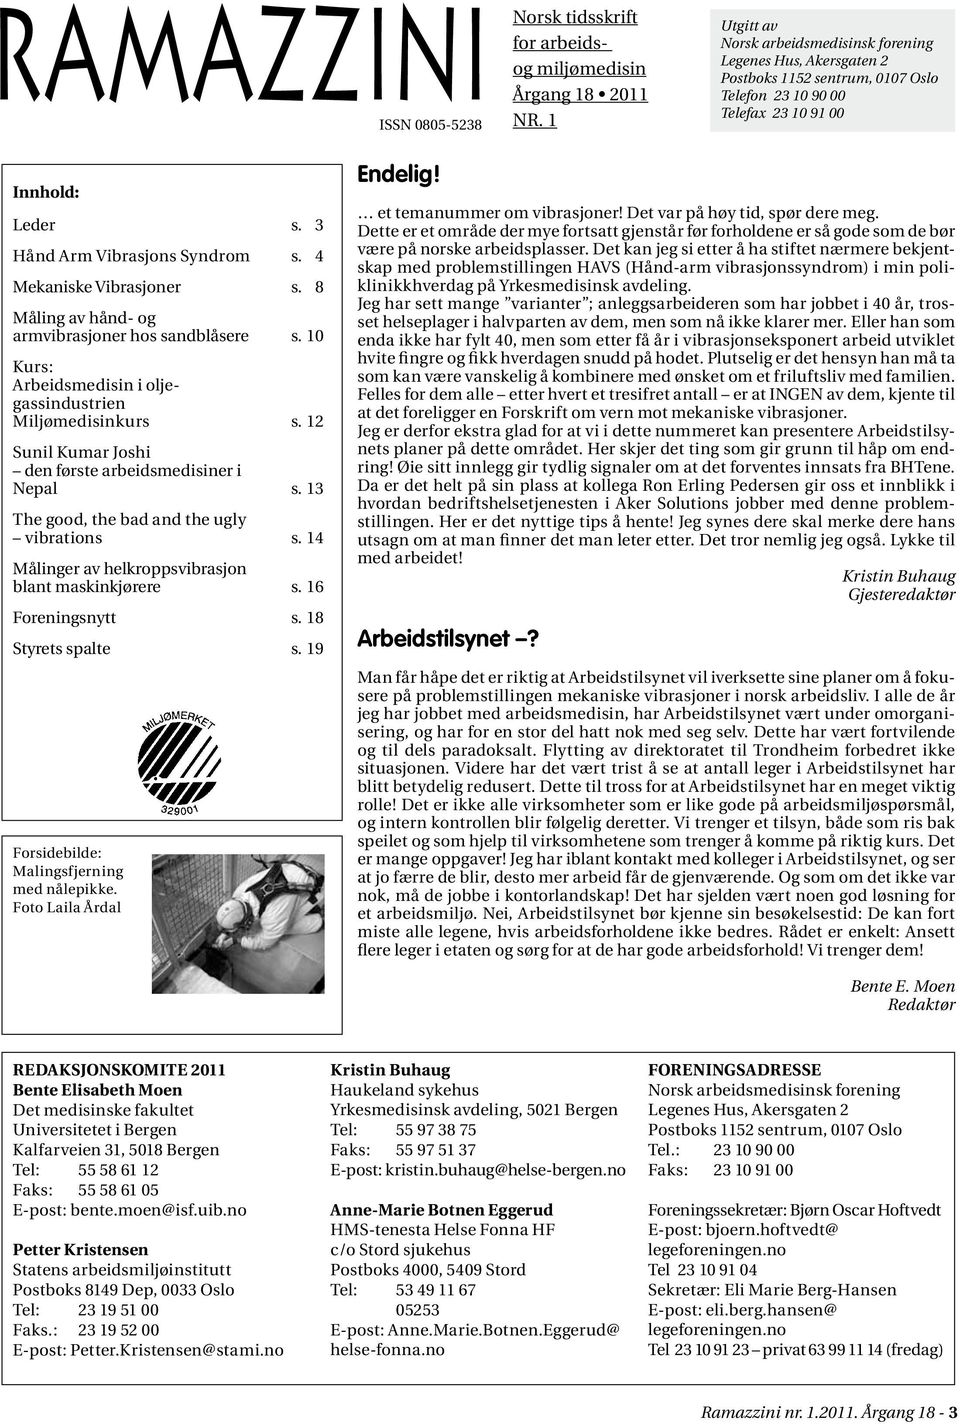 4 Mekaniske Vibrasjoner s. 8 Måling av hånd- og armvibrasjoner hos sandblåsere s. 10 Kurs: Arbeidsmedisin i oljegassindustrien Miljømedisinkurs s.